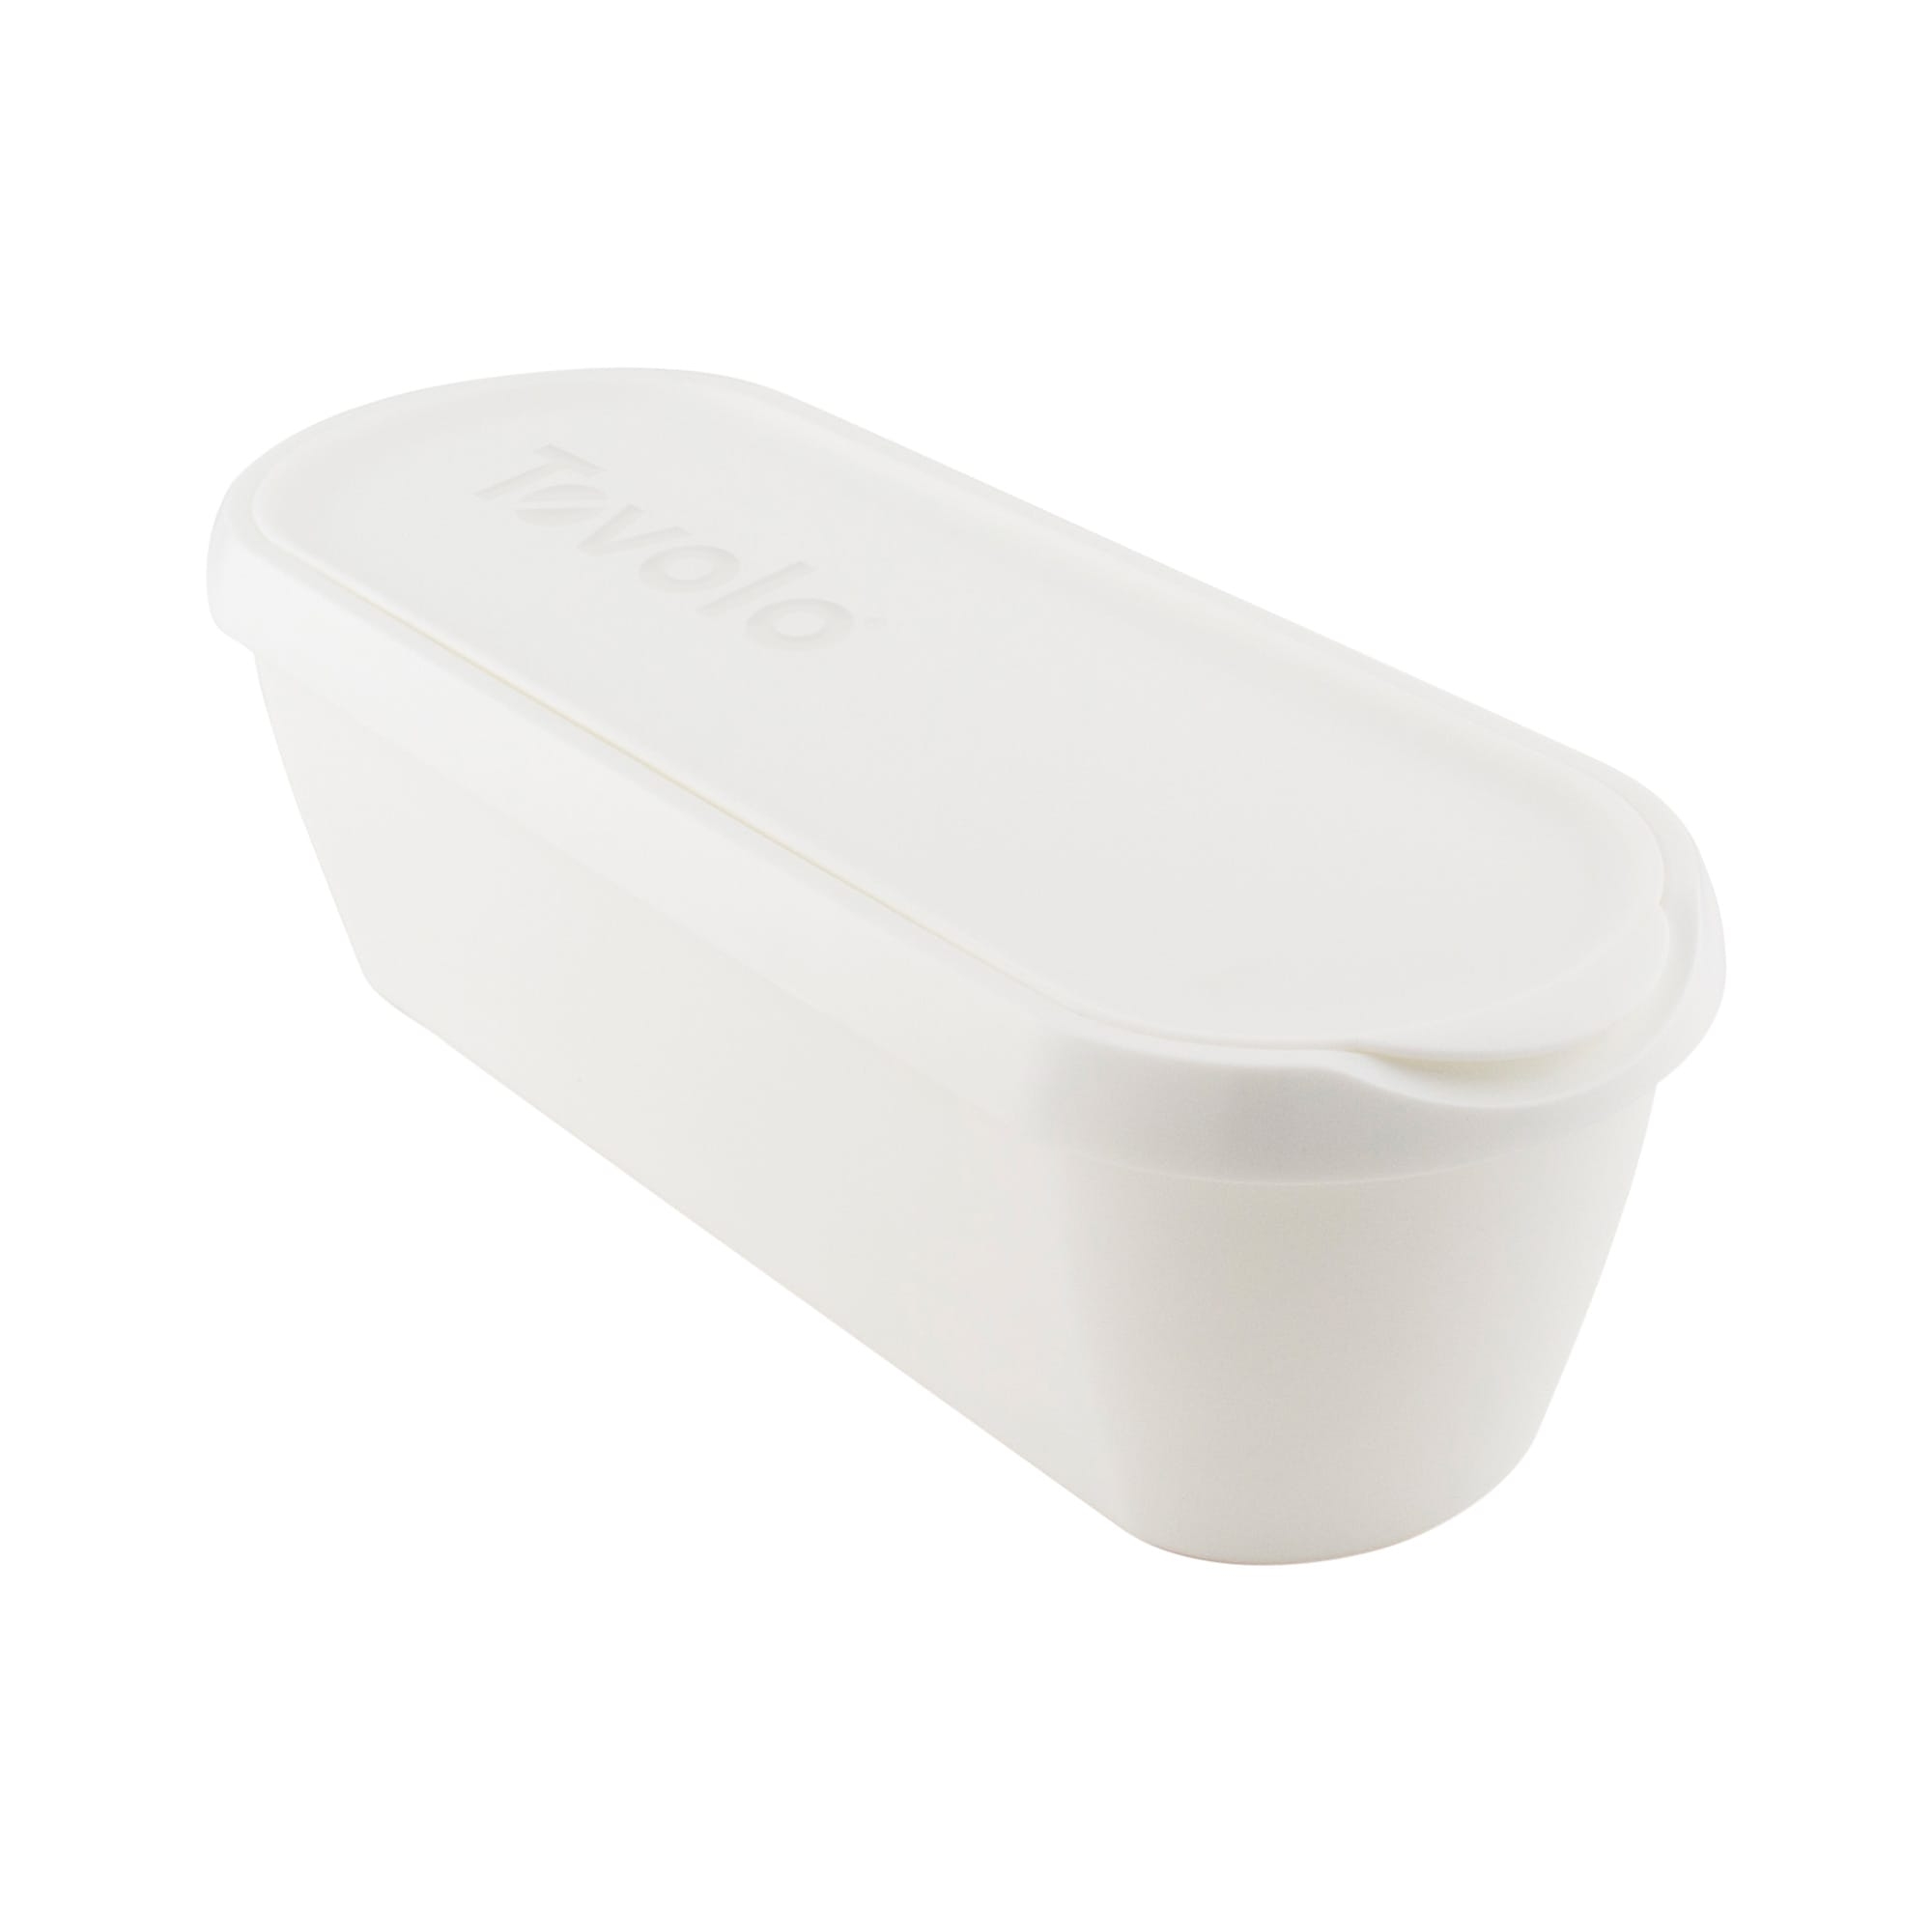 Tovolo Glide-A-Scoop Ice Cream Tub 1.5L White Image 2